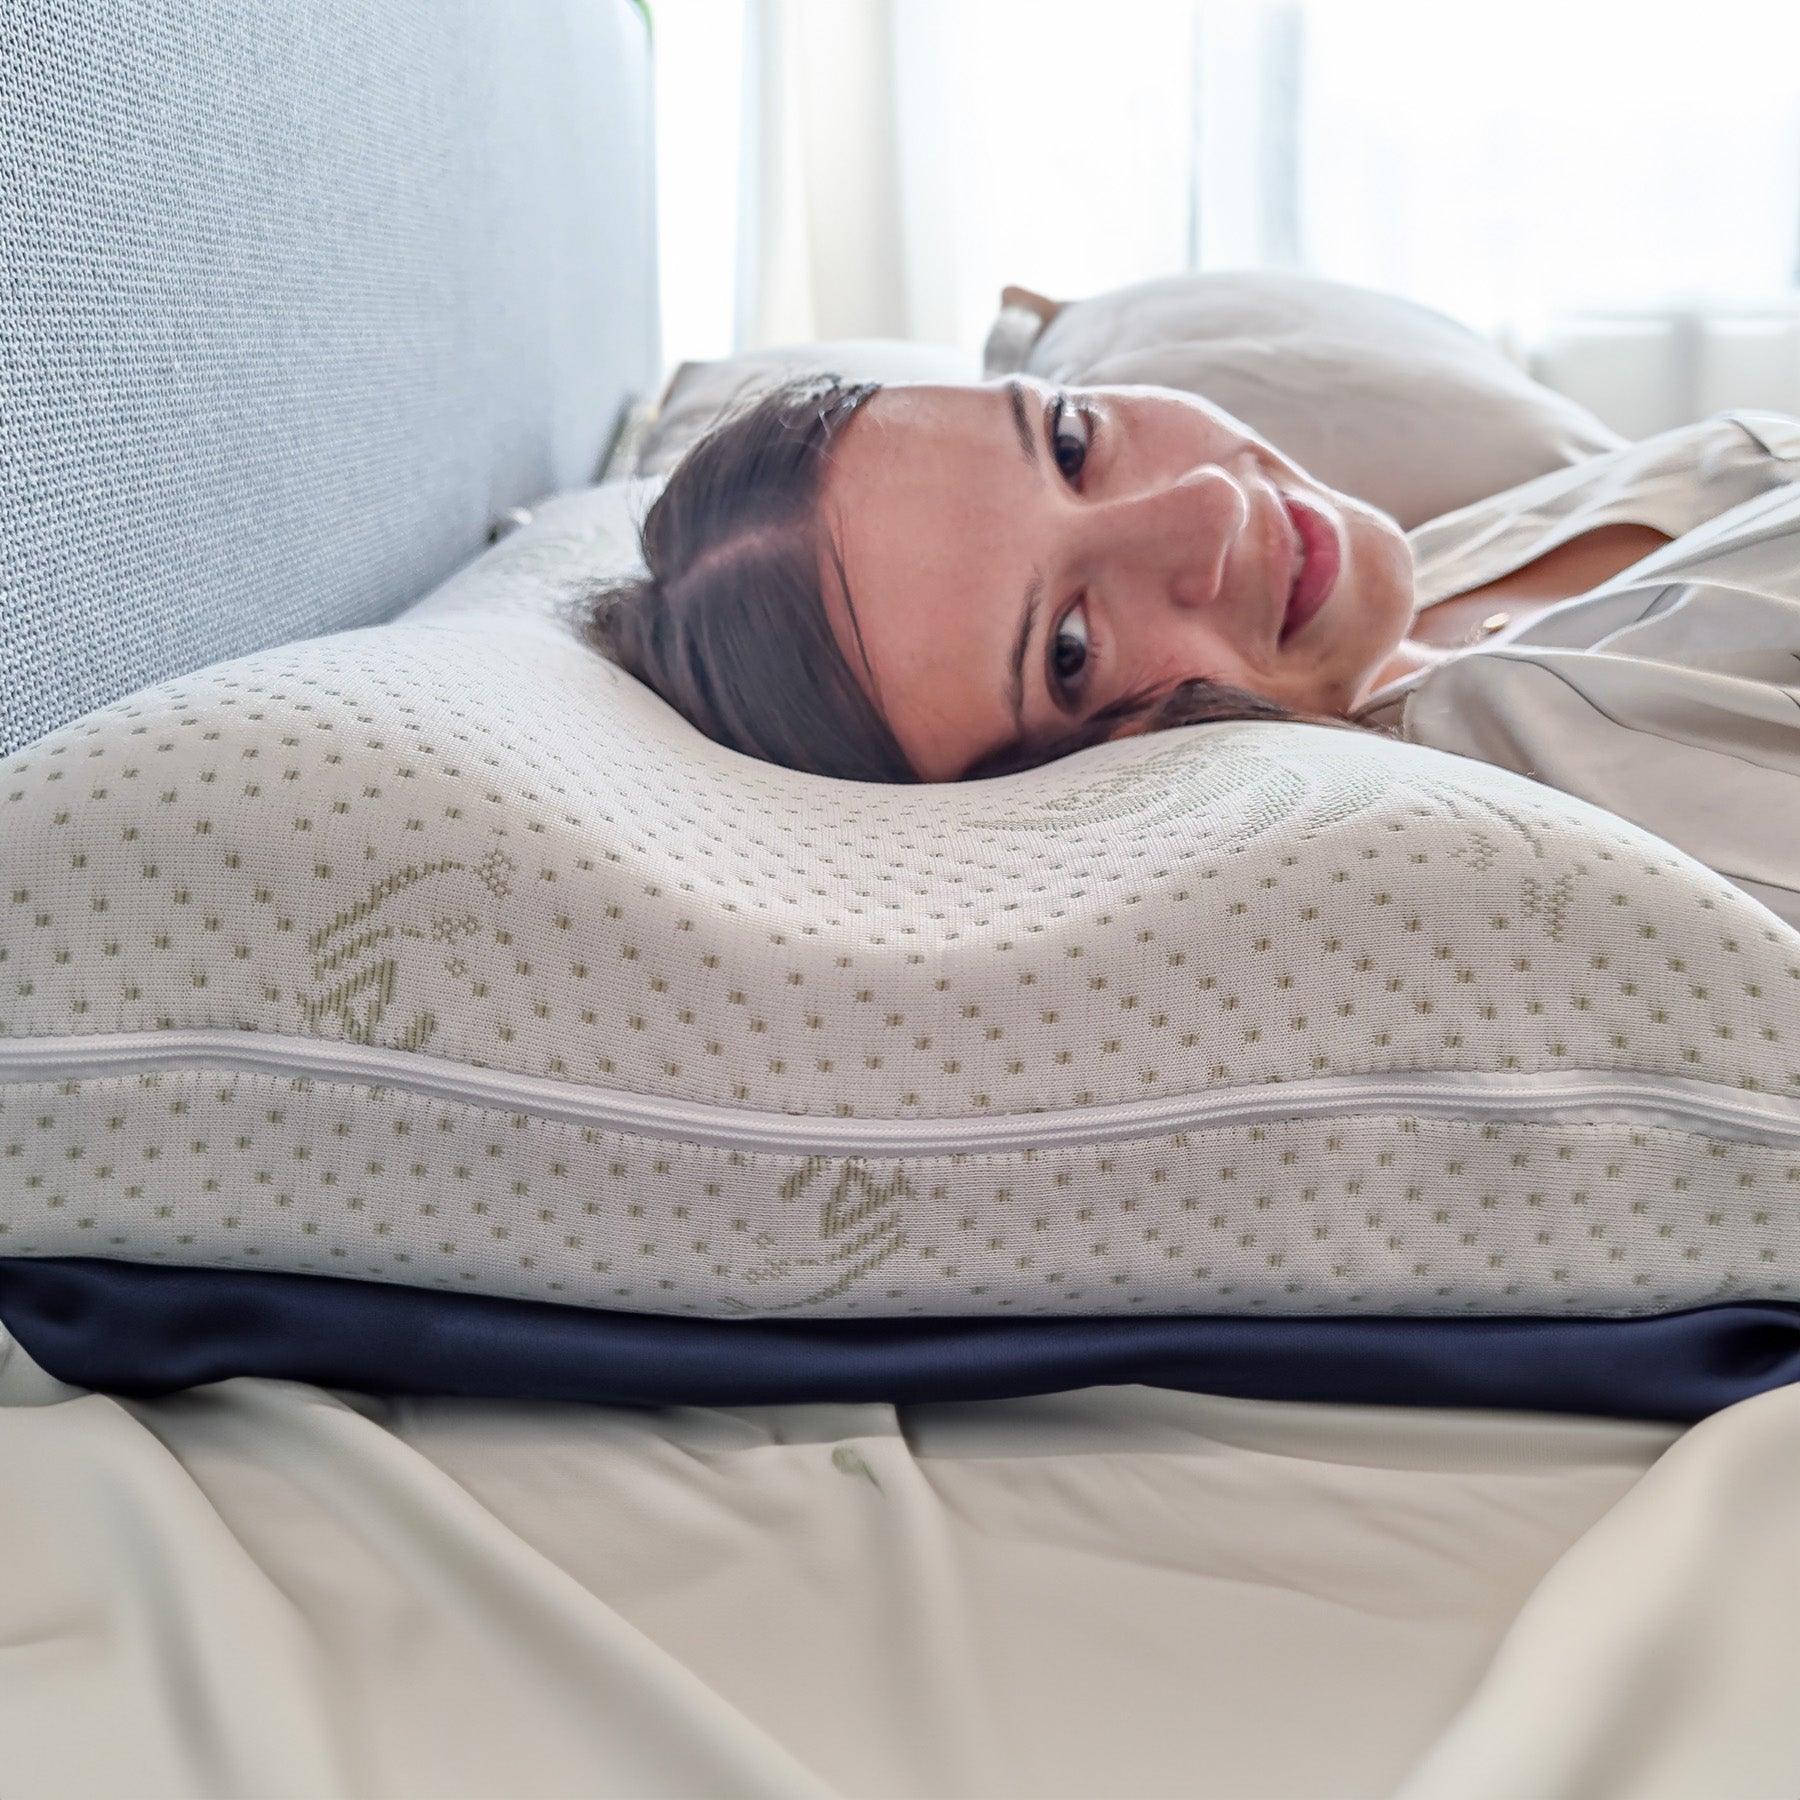 Dettaglio del cuscino cervicale Positano in memory foam con aloe, ideale per offrire comfort e freschezza durante il sonno